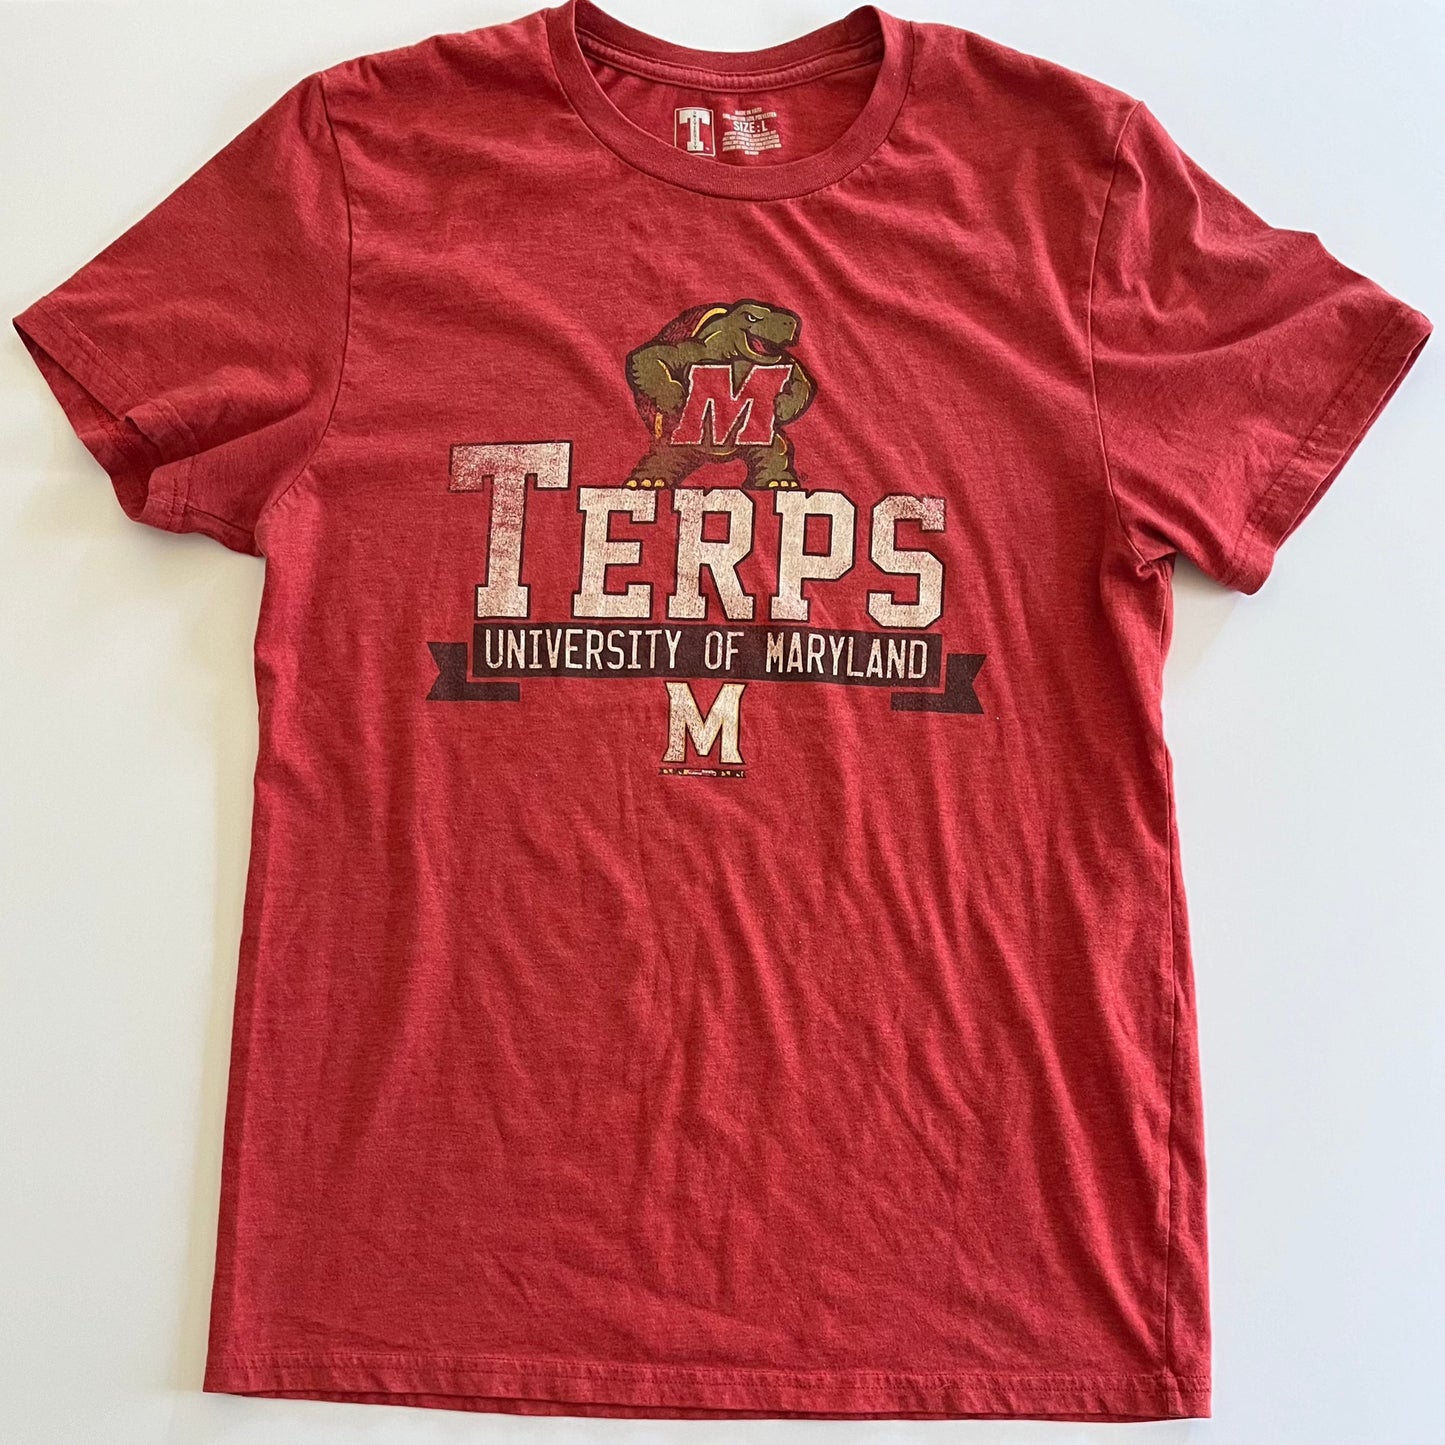 University of Maryland - University T Tee (Large)